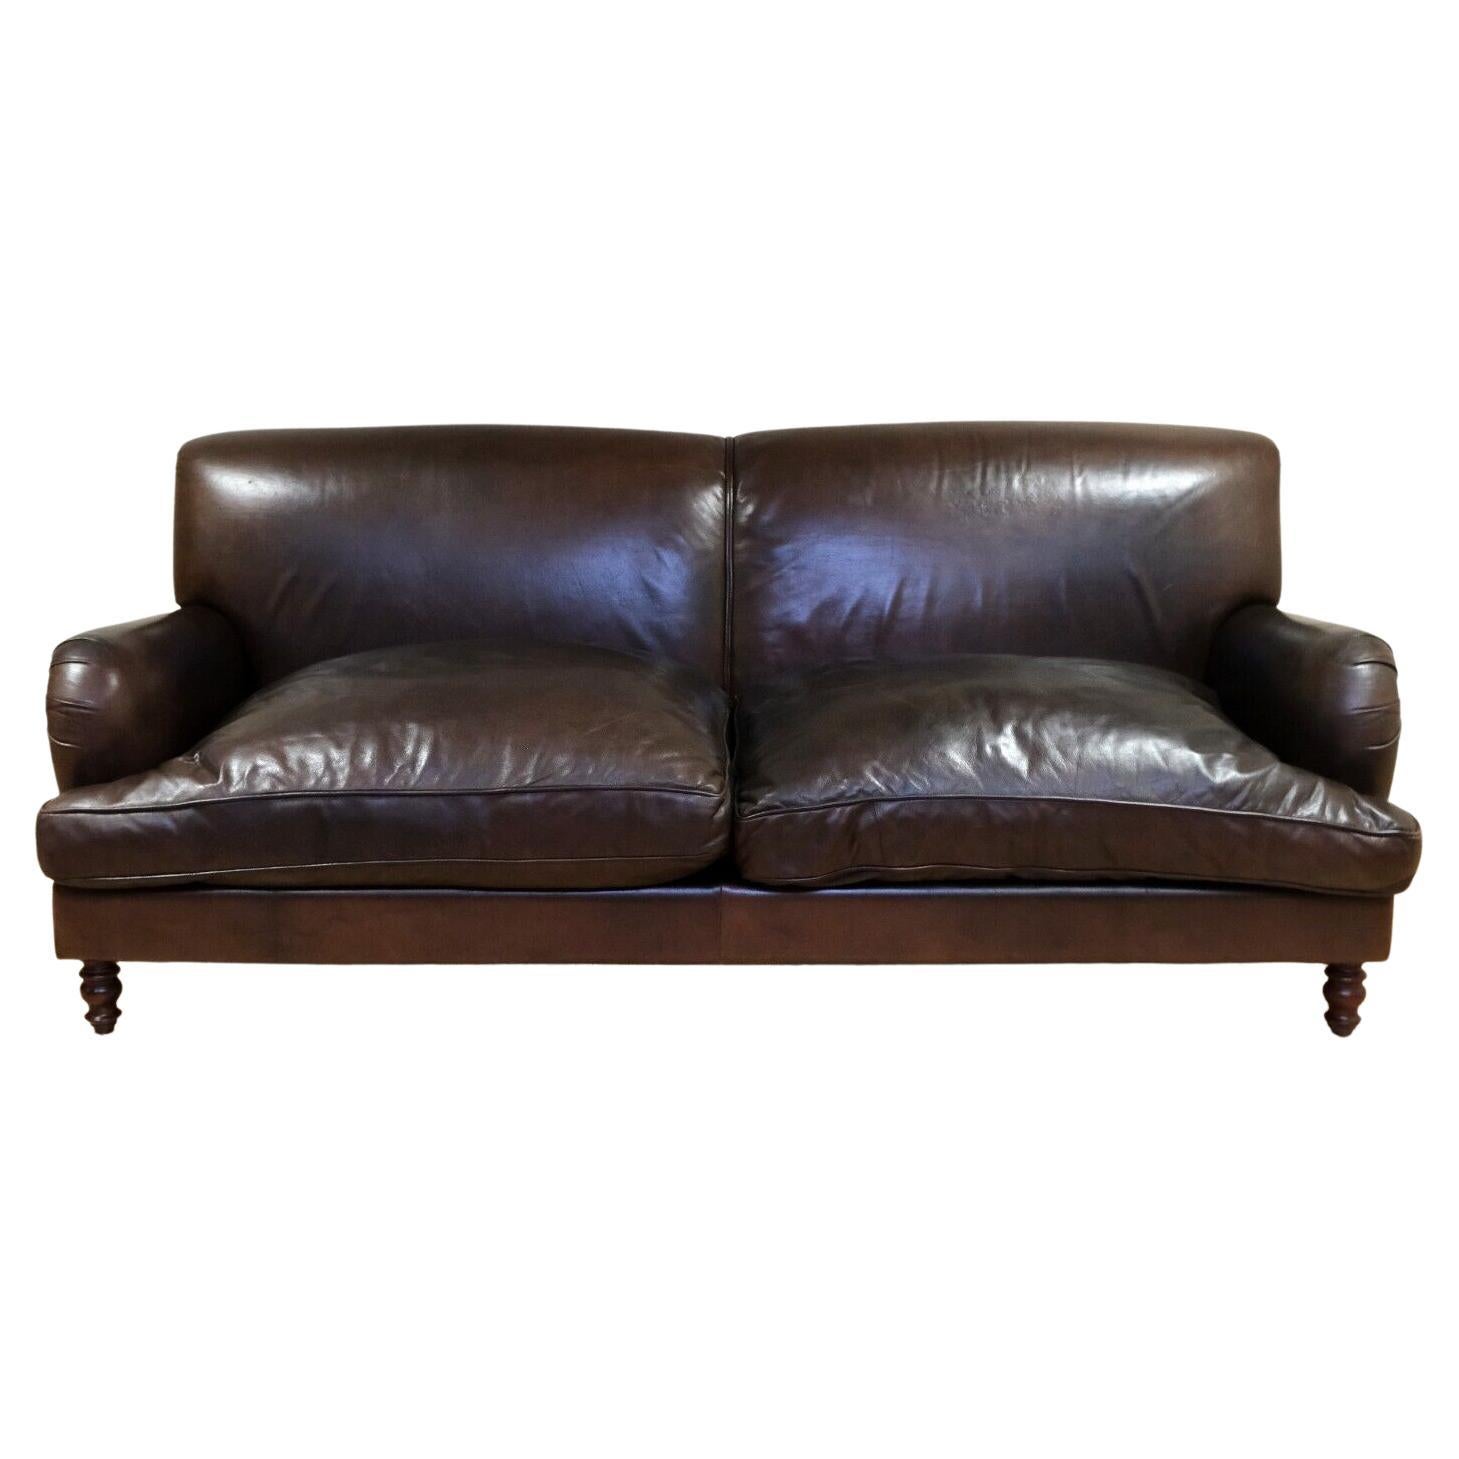 Nous sommes ravis de proposer à la vente cet élégant canapé trois places en cuir marron de style Vintage By Howard avec coussins réversibles.

Ce canapé élégant et bien fabriqué est doté d'une surface d'assise généreuse, ce qui lui permet